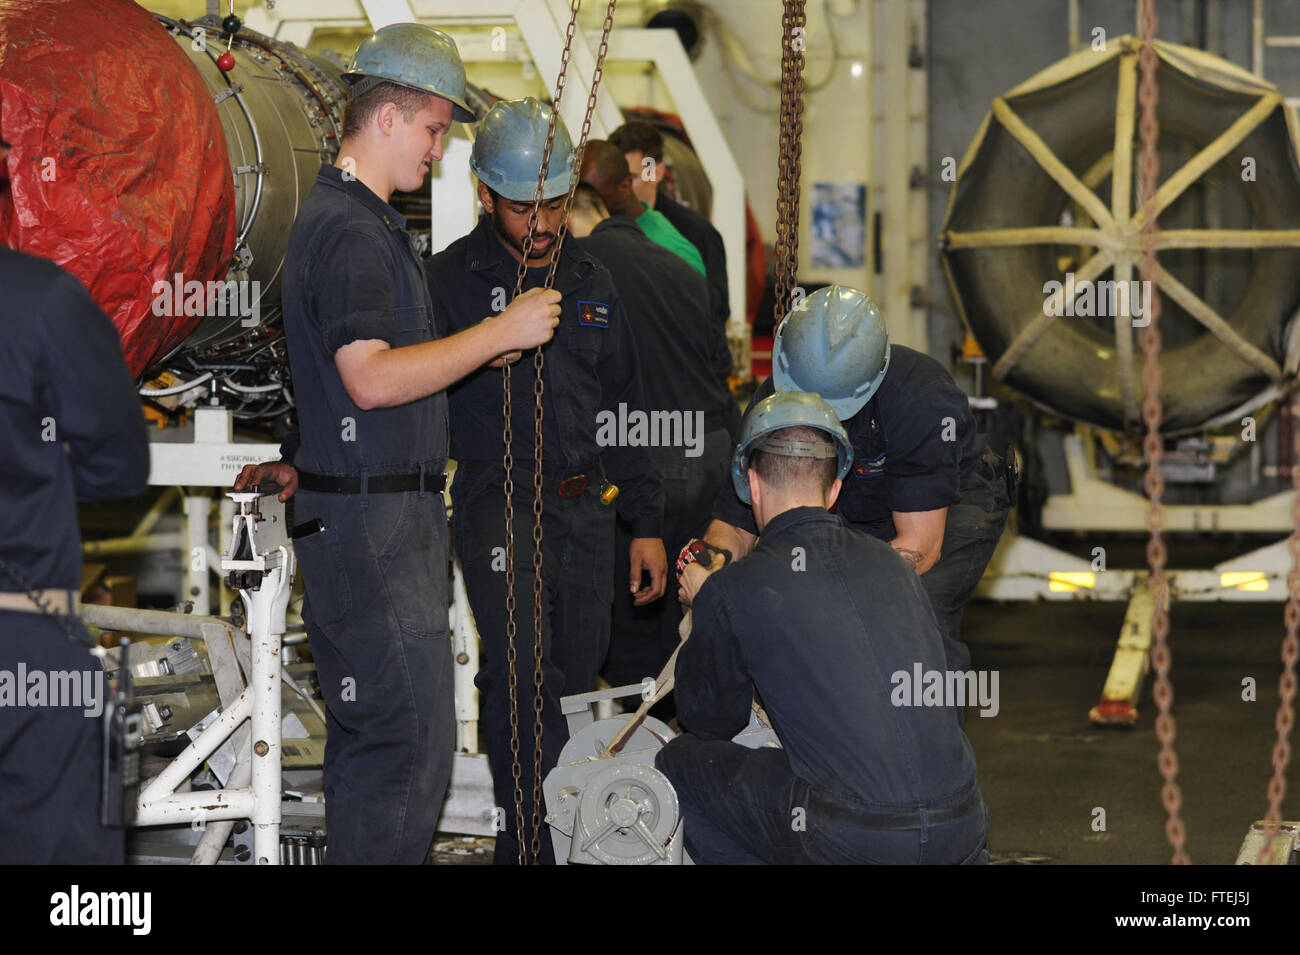 Estrecho de Gibraltar (Nov. 6, 2014) instalar un nuevo elevador de marineros a bordo del portaaviones USS George H.W. Bush (CVN 77). George H.W. Bush, homeported en Norfolk, Virginia, es la realización de las operaciones navales en los EE.UU. 6ª Flota de la zona de operaciones en apoyo de los intereses de seguridad nacional de EE.UU. en Europa. Foto de stock